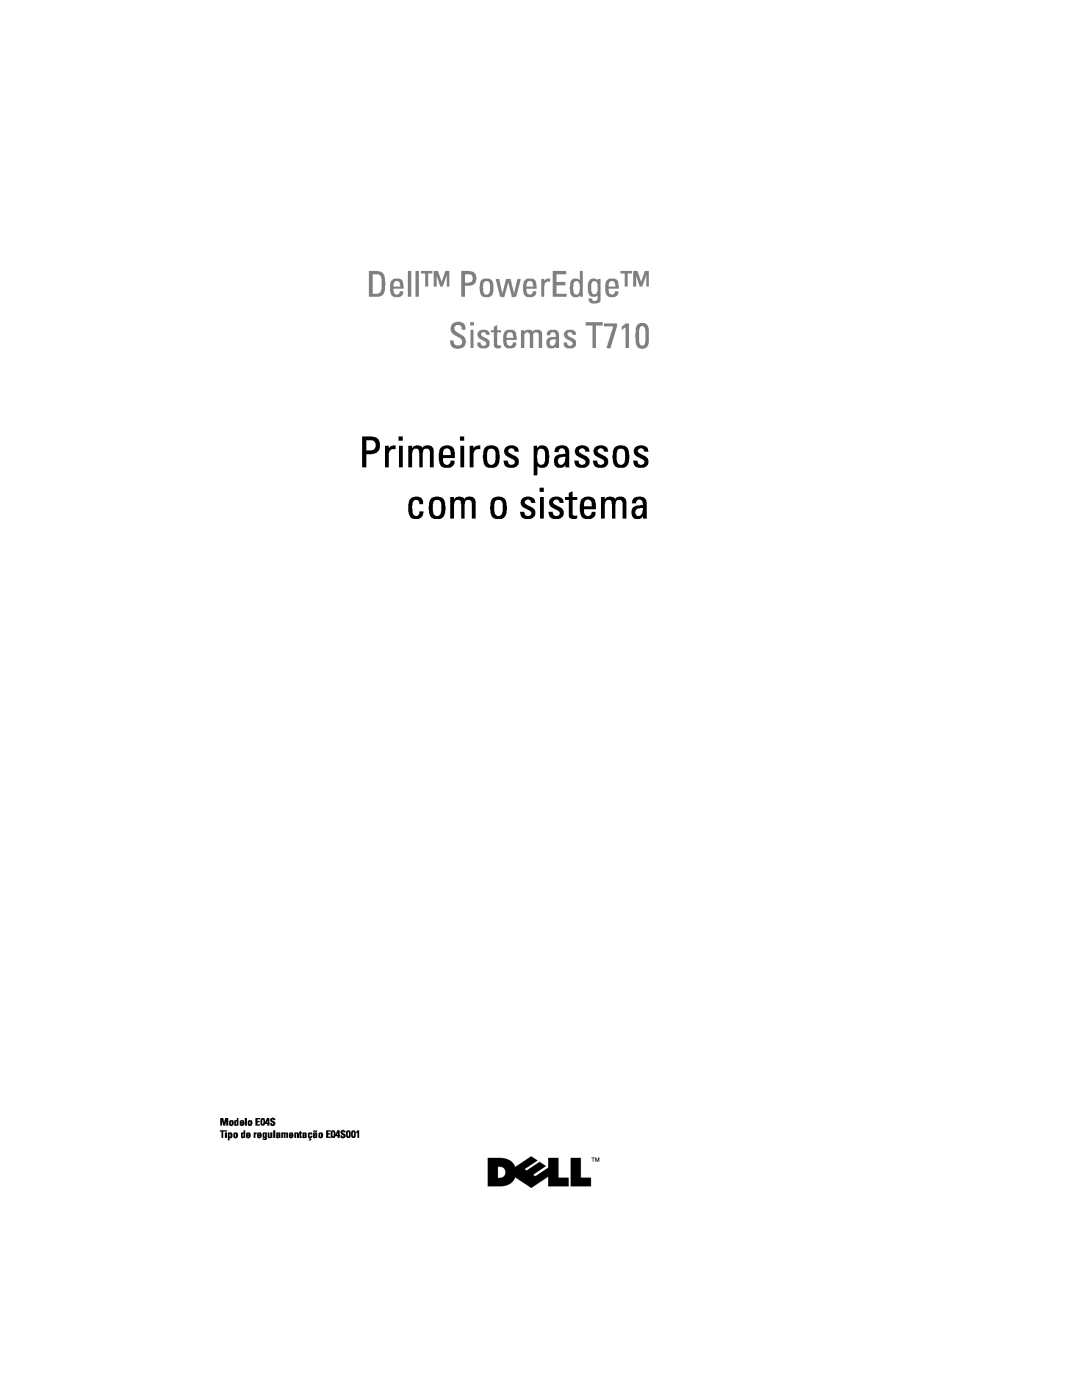 Dell N732H manual Primeiros passos com o sistema, Dell PowerEdge Sistemas T710, Modelo E04S Tipo de regulamentação E04S001 